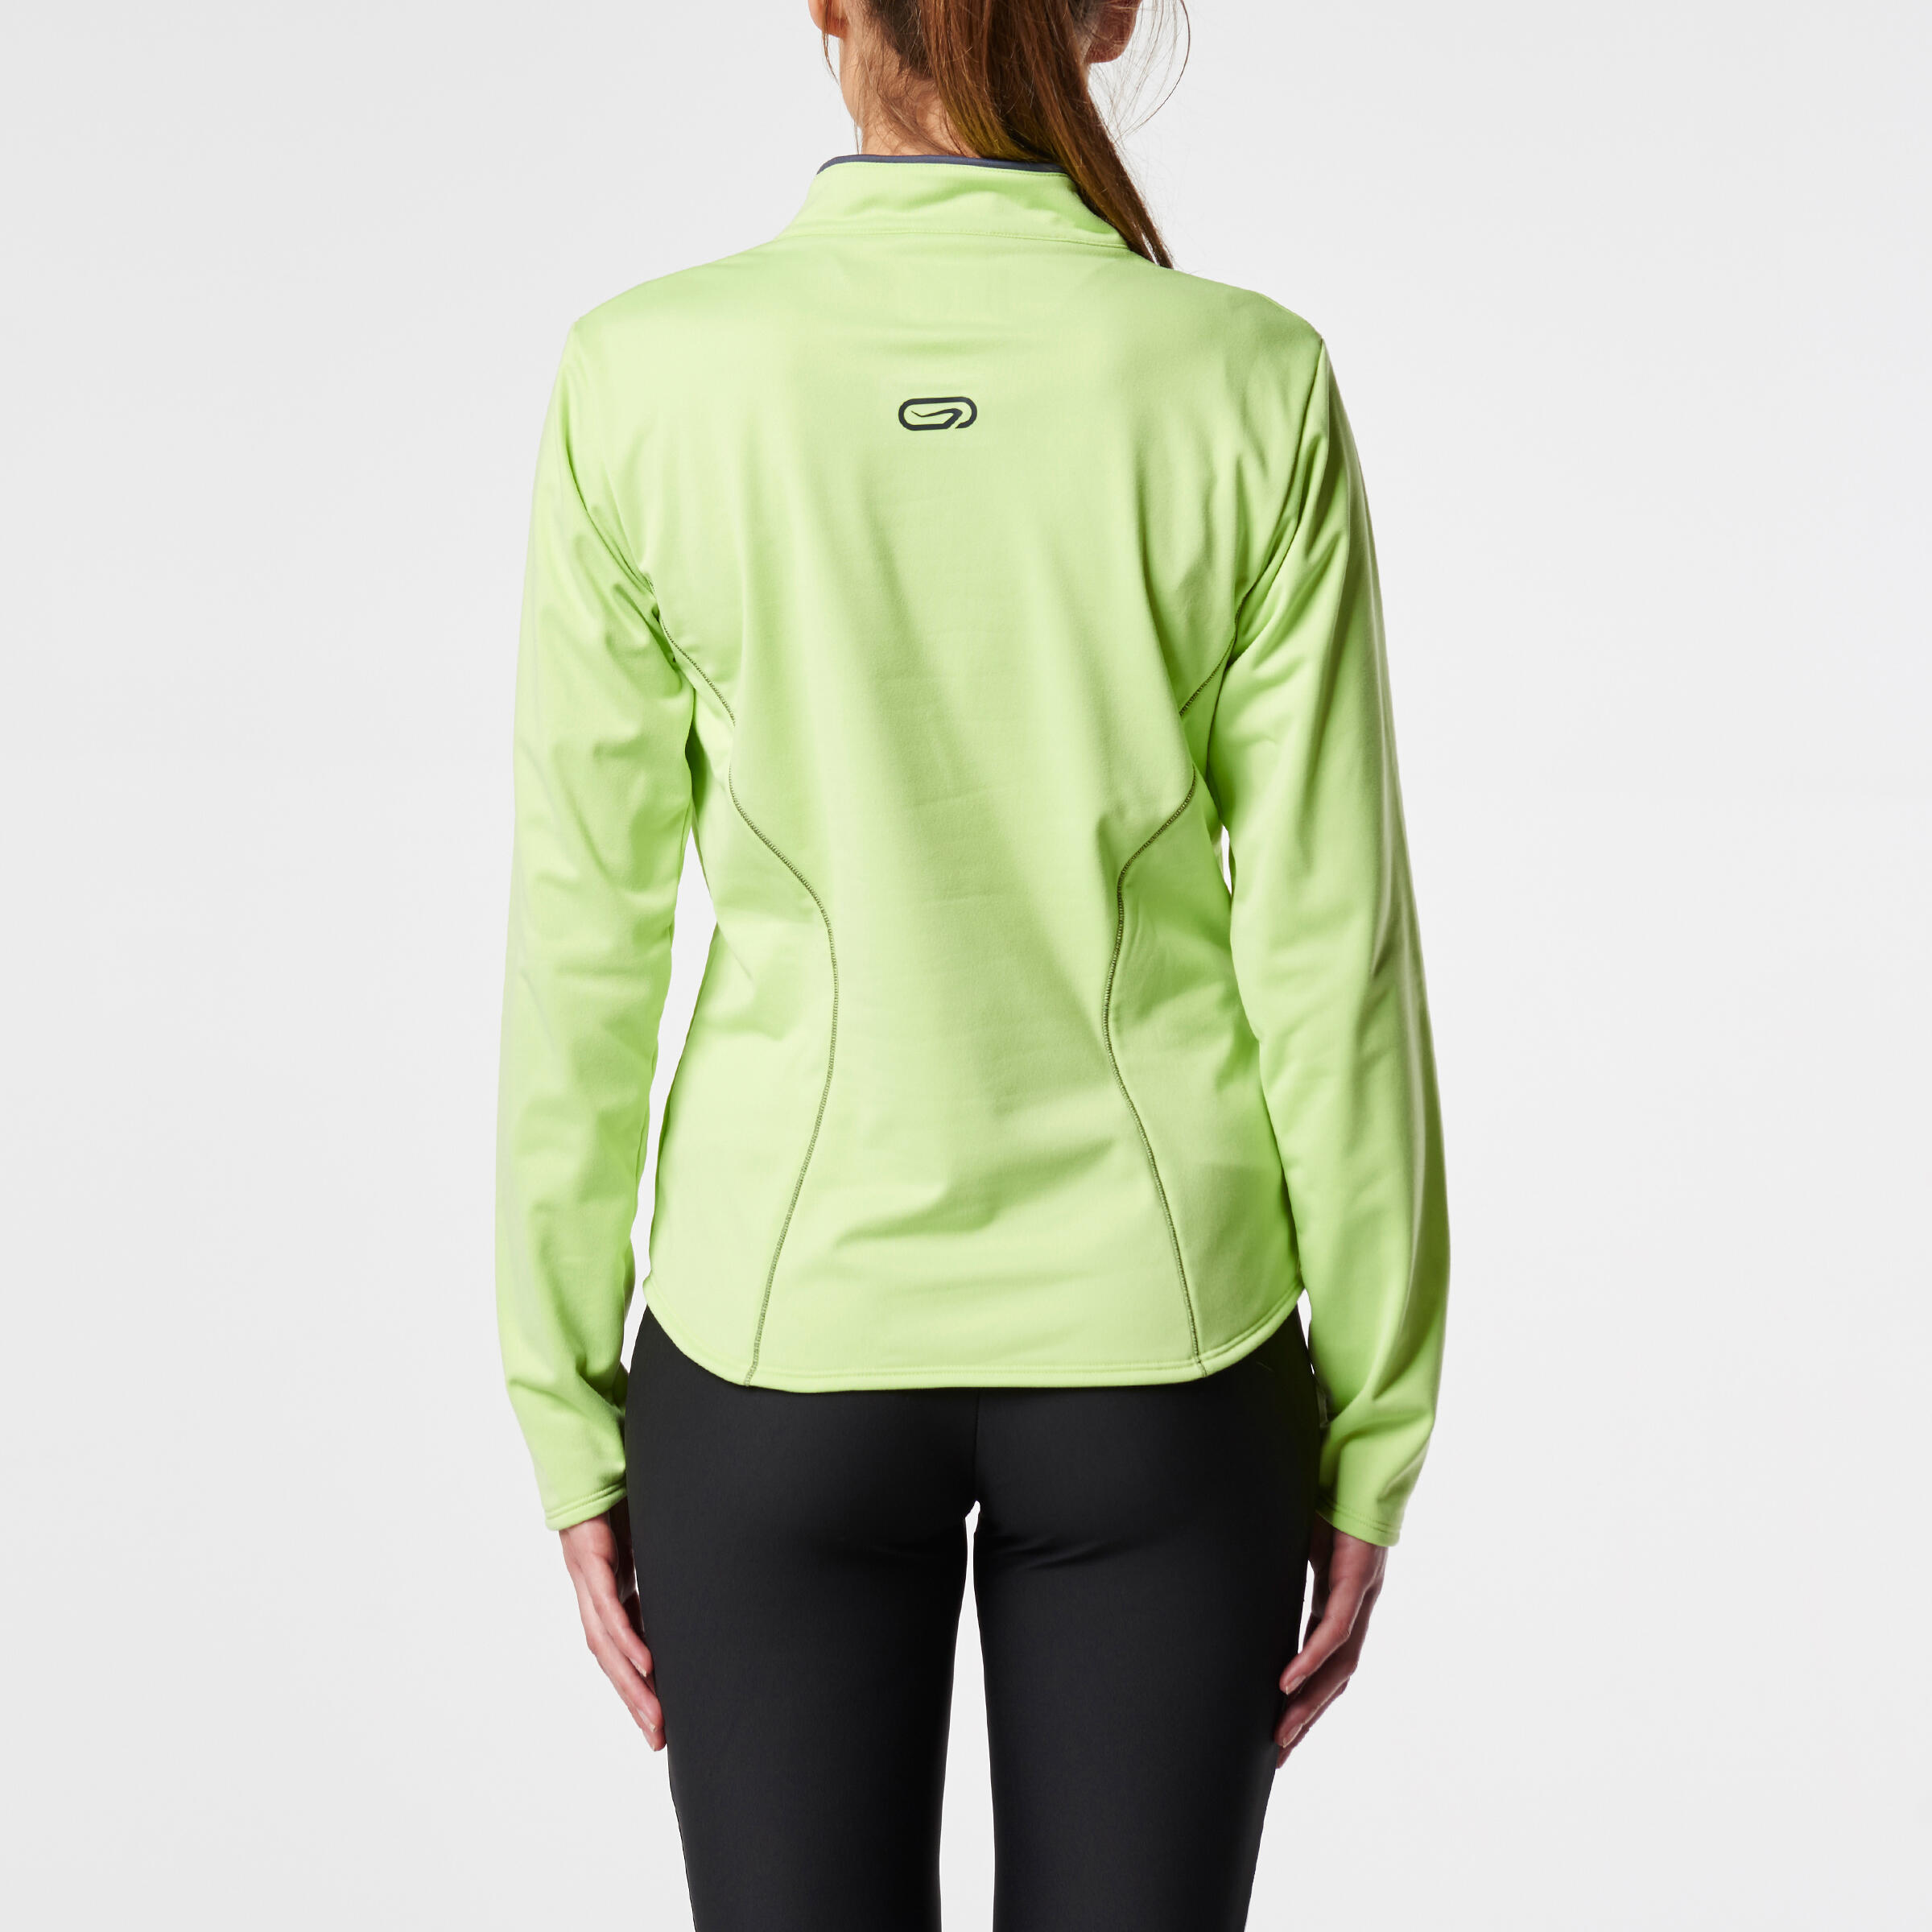 Ekiden Women's Warm Long Sleeved Running Jersey - Green 5/11